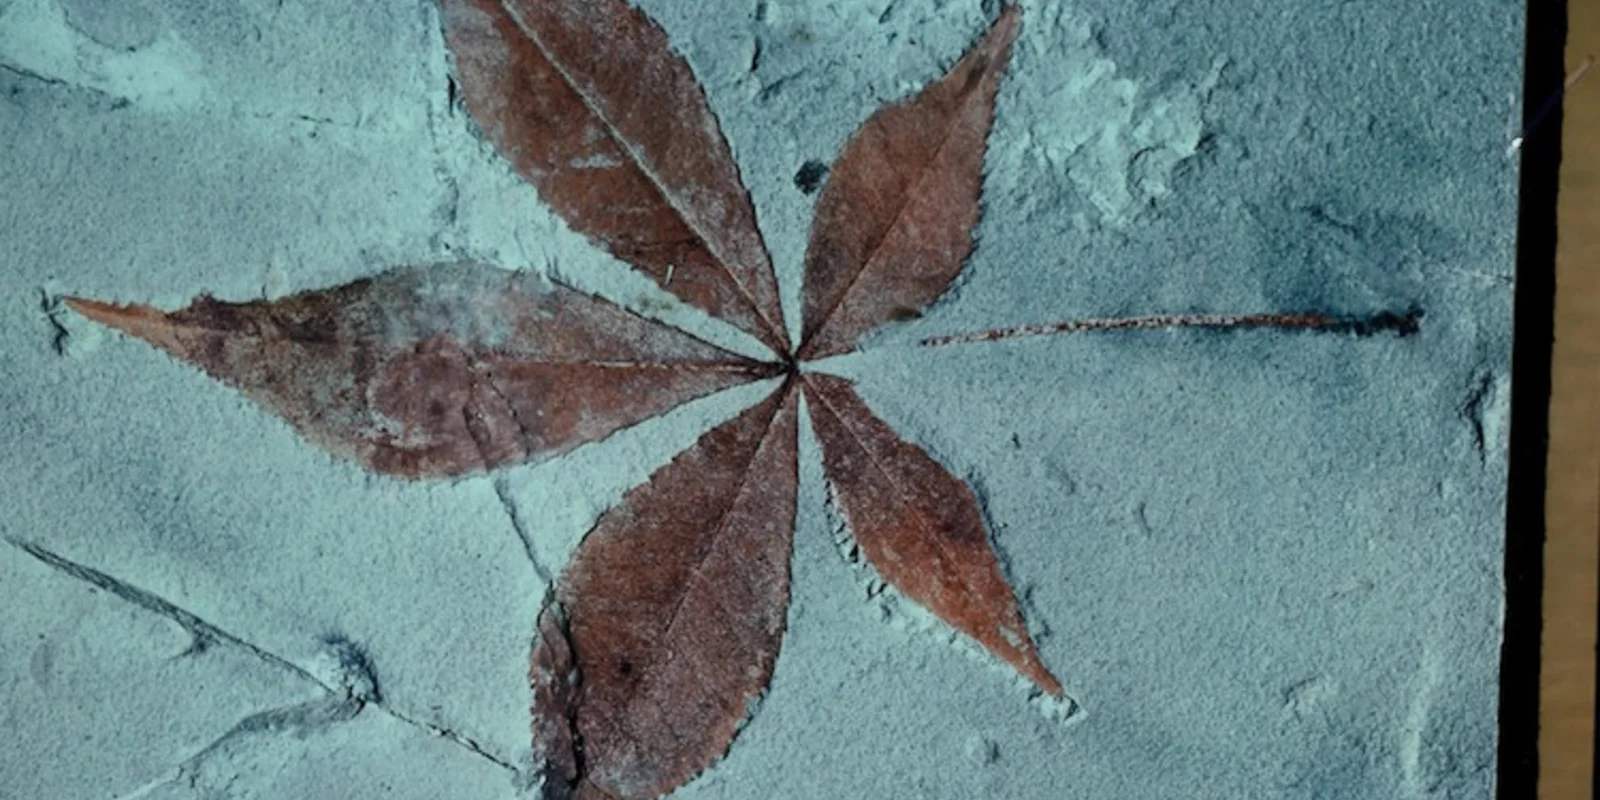 Fossiles Blatt eines Ahorns (?), rötlich wie frisch vom Baum gefallen, in grauem Stein